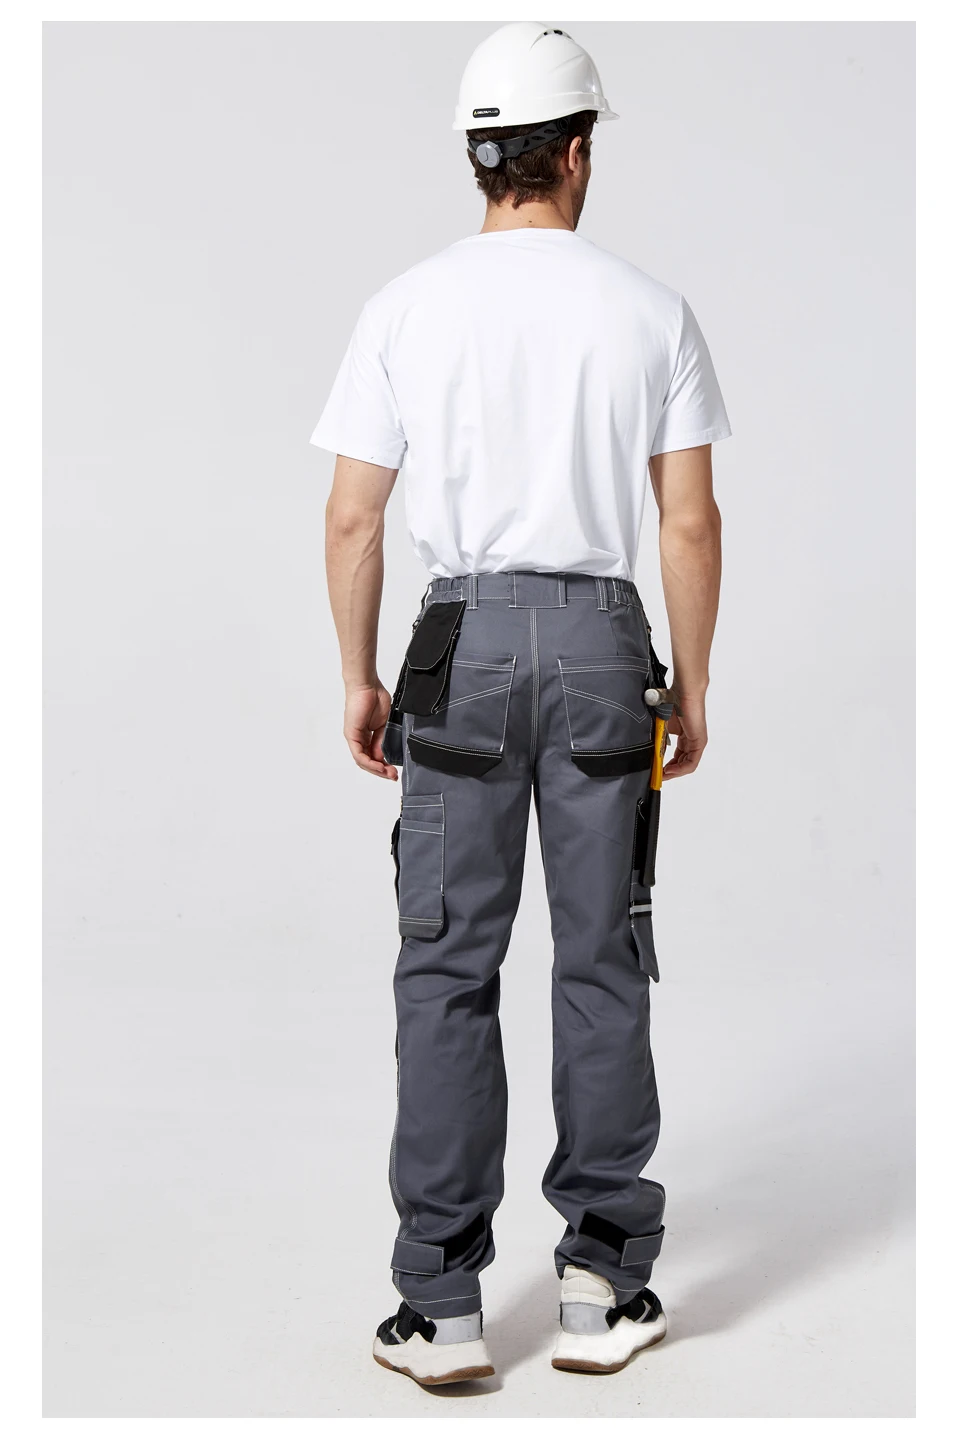 Рабочая одежда мужская защитная одежда брюки многофункциональный инструмент карманы хлопок комбинезон для механика наколенники B111